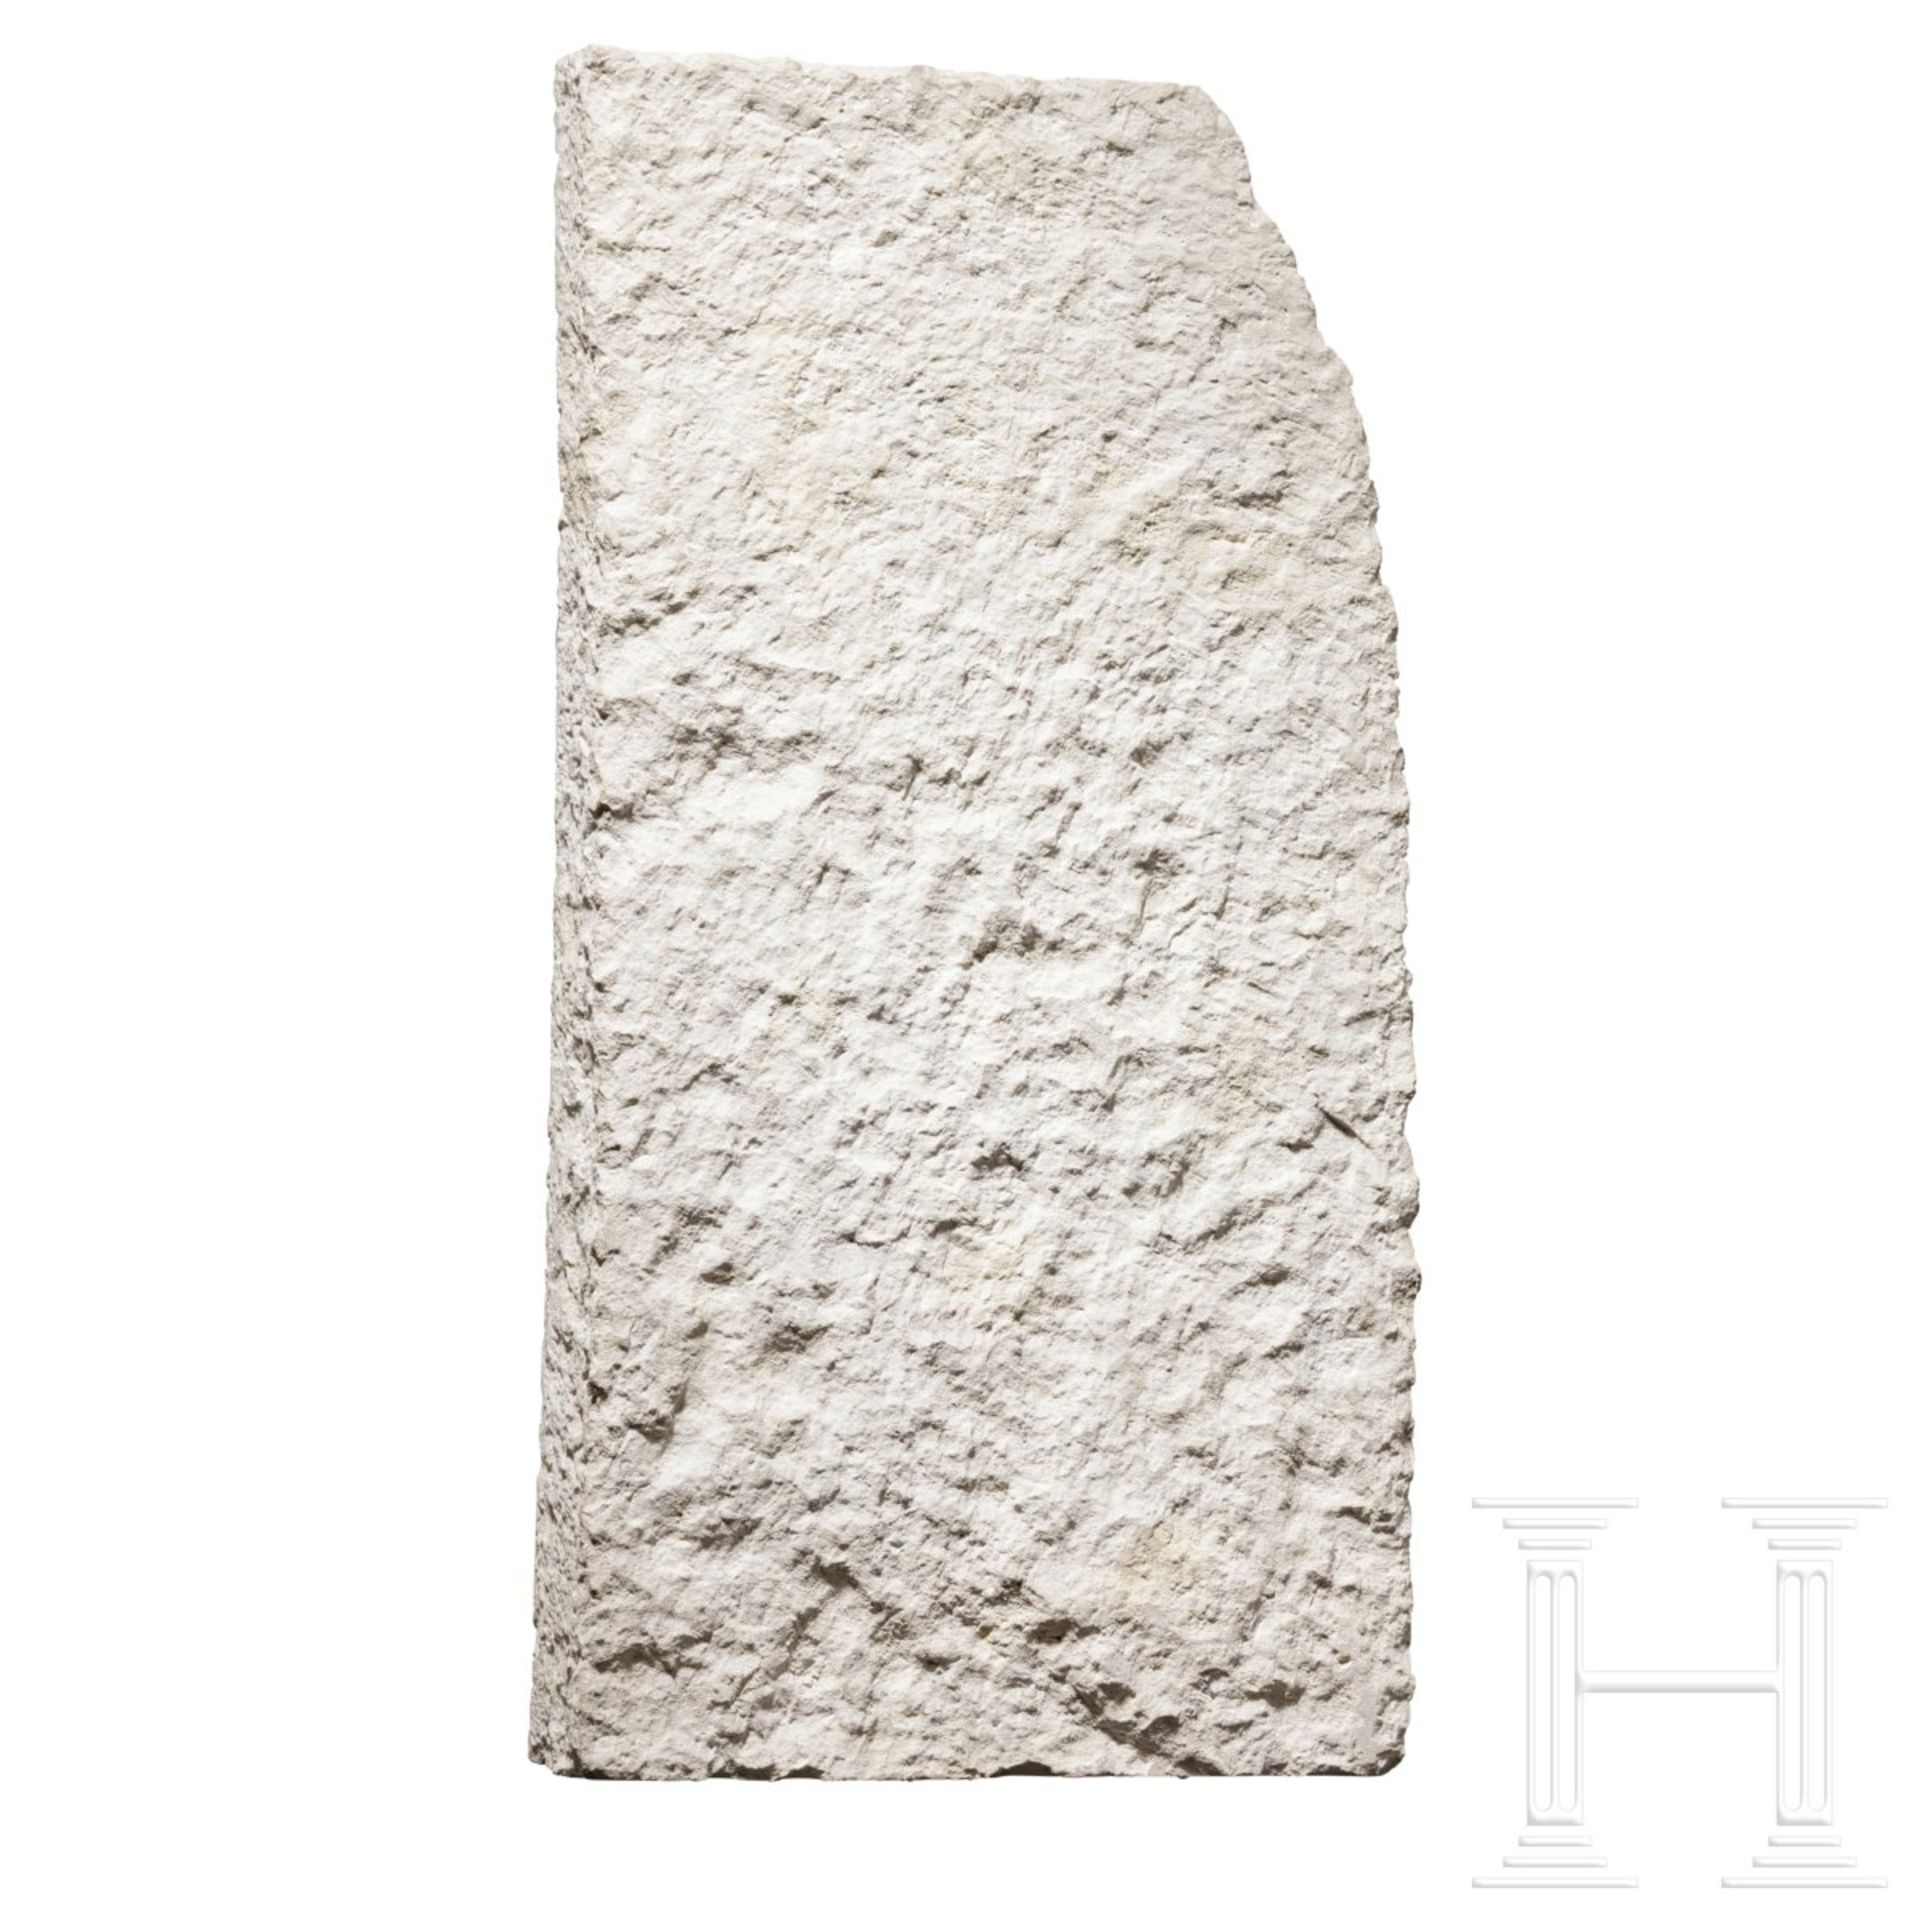 Eindrucksvolles Kalksteinrelief des Iti, Ägypten, Altes Reich, 5. - 6. Dynastie, 2498-2181 v. Chr. - Bild 4 aus 7